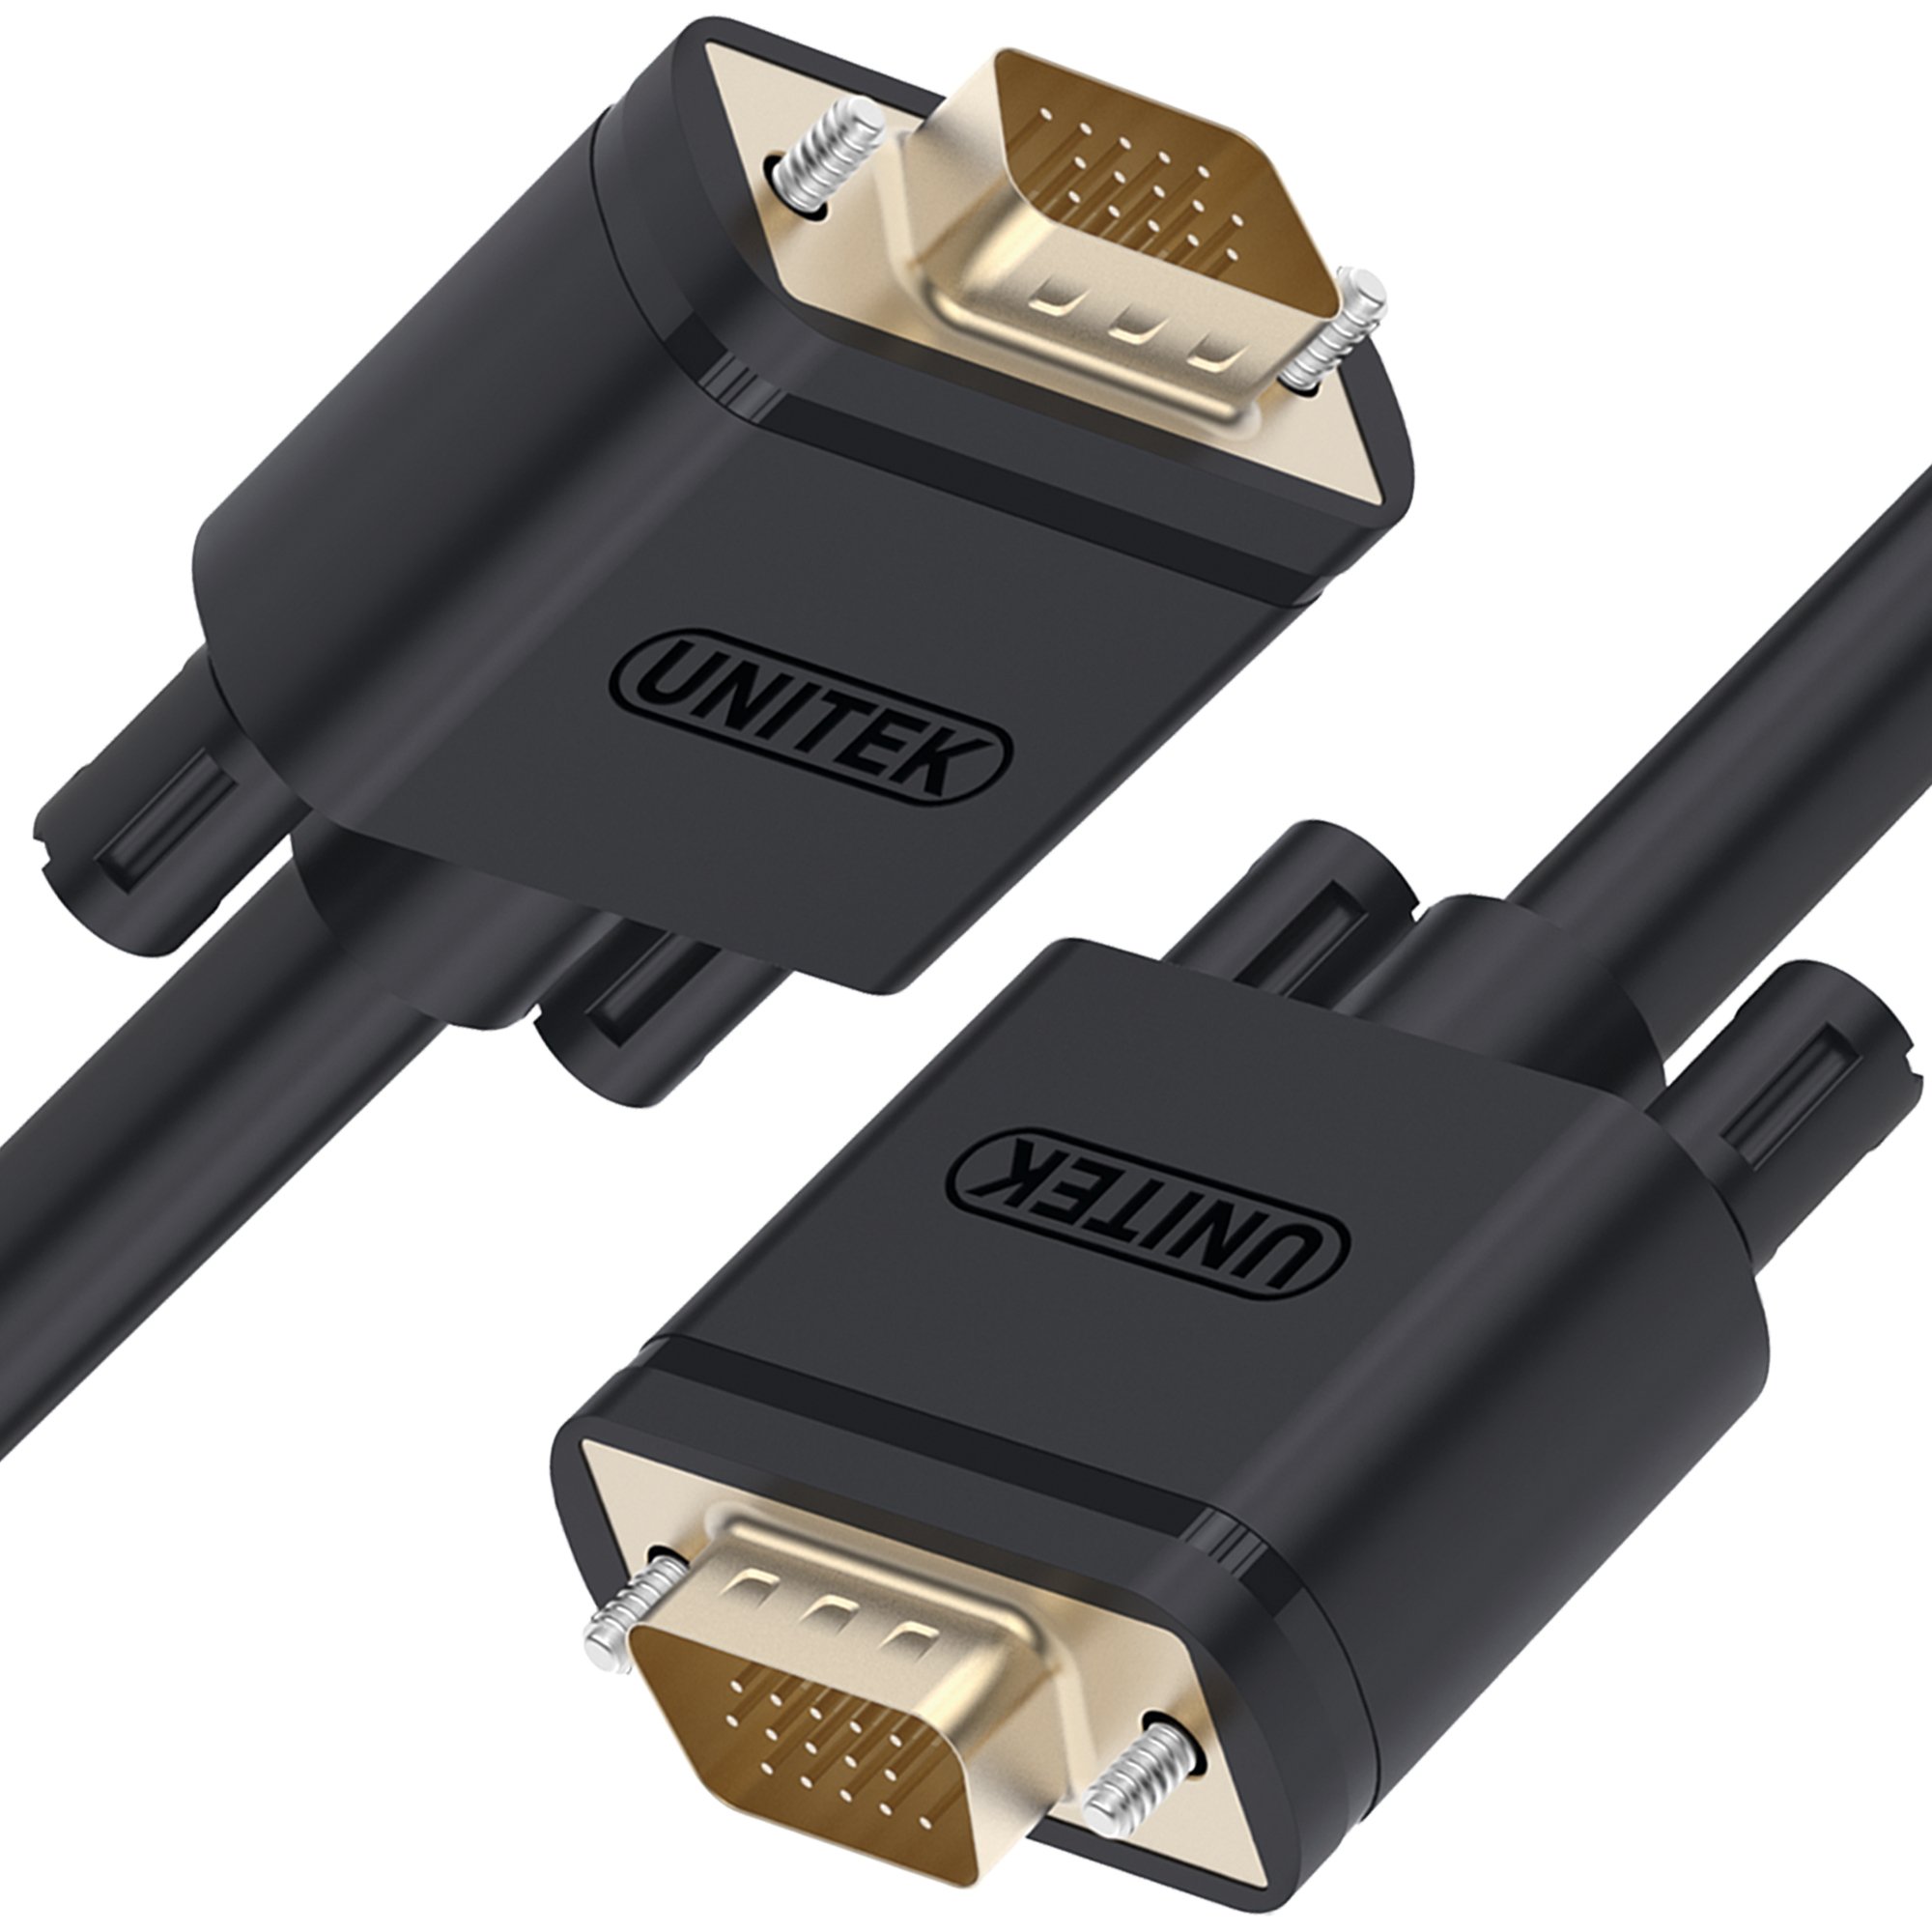 Cablu Unitek Cablu VGA HD15 M/M 1.5m, Premium, Y-C503A